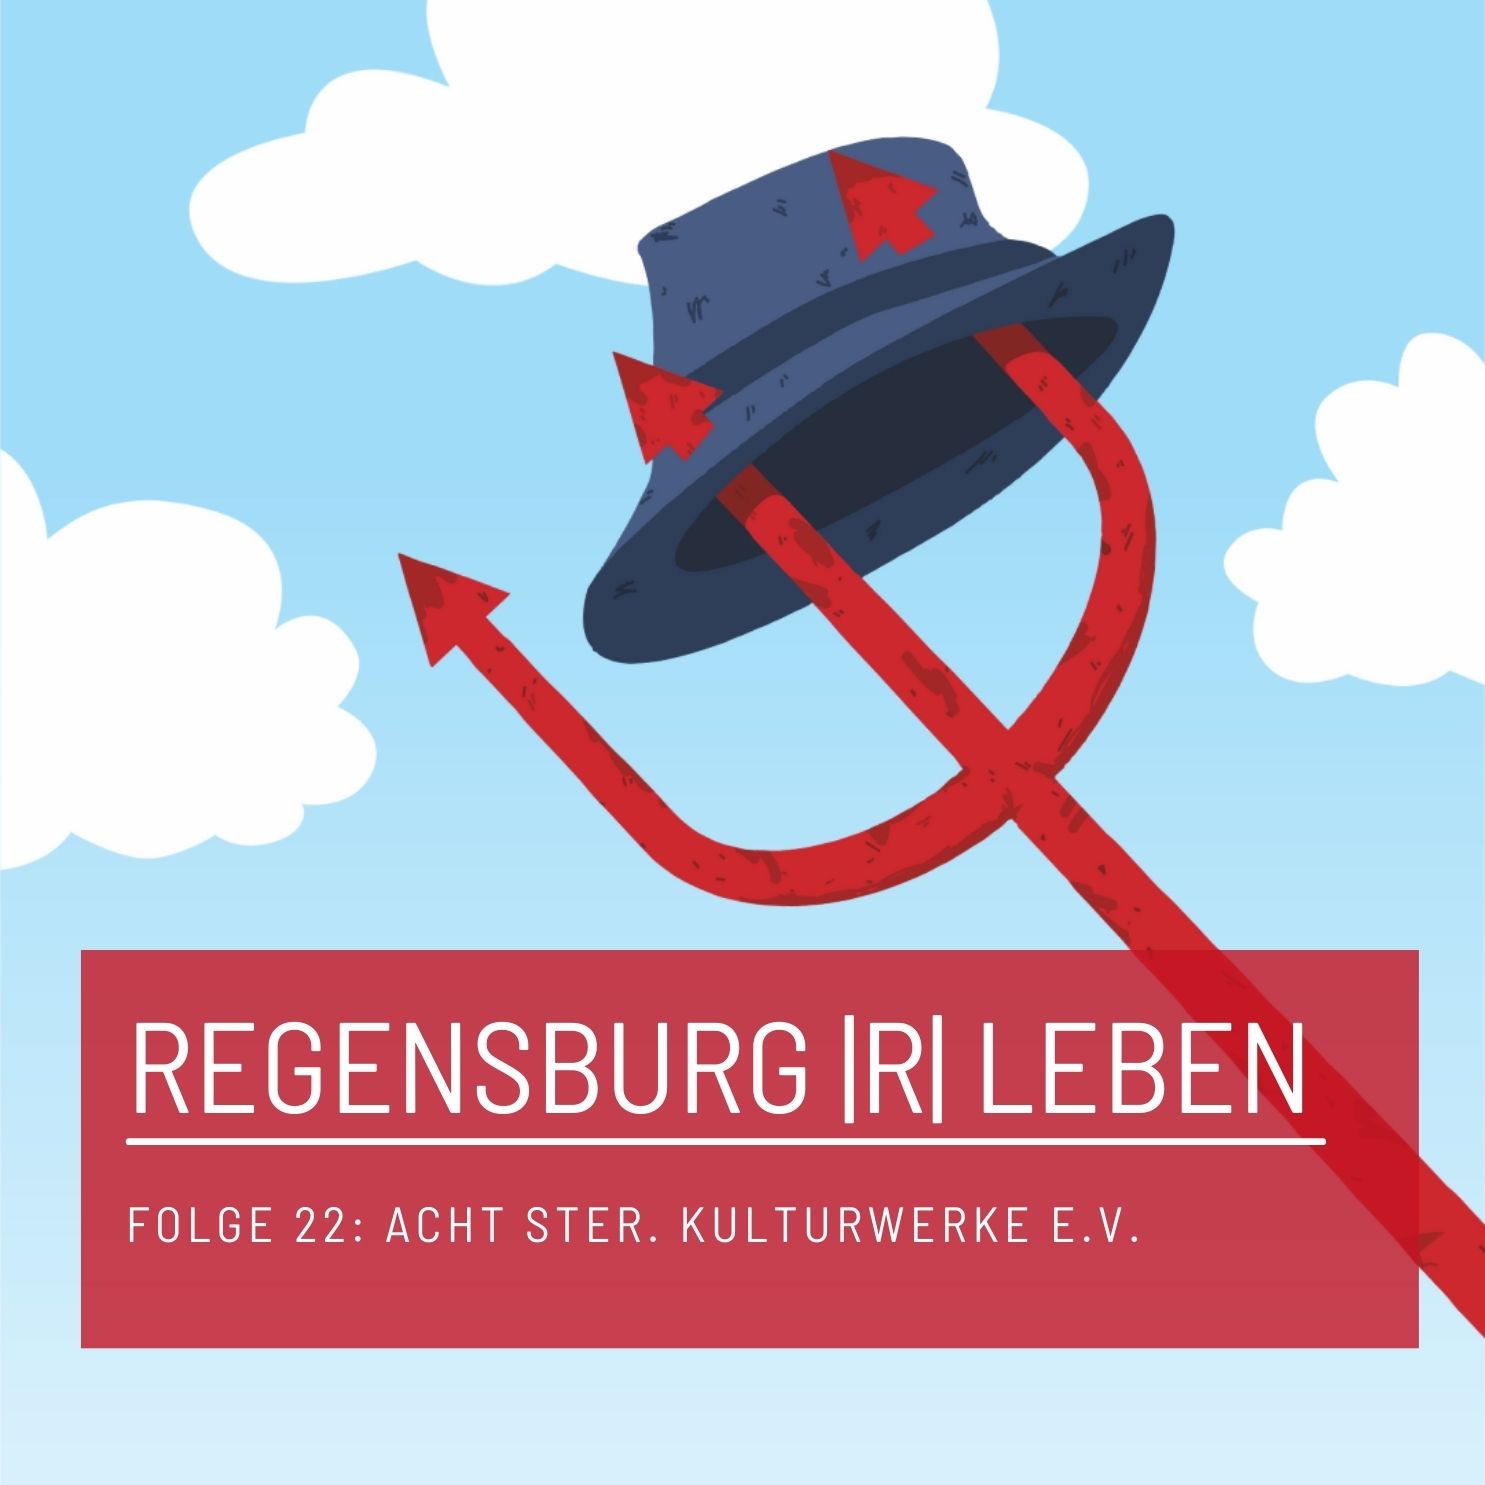 REGENSBURG |R| LEBEN - Folge 22 - Acht Ster. Kulturwerke e.V.